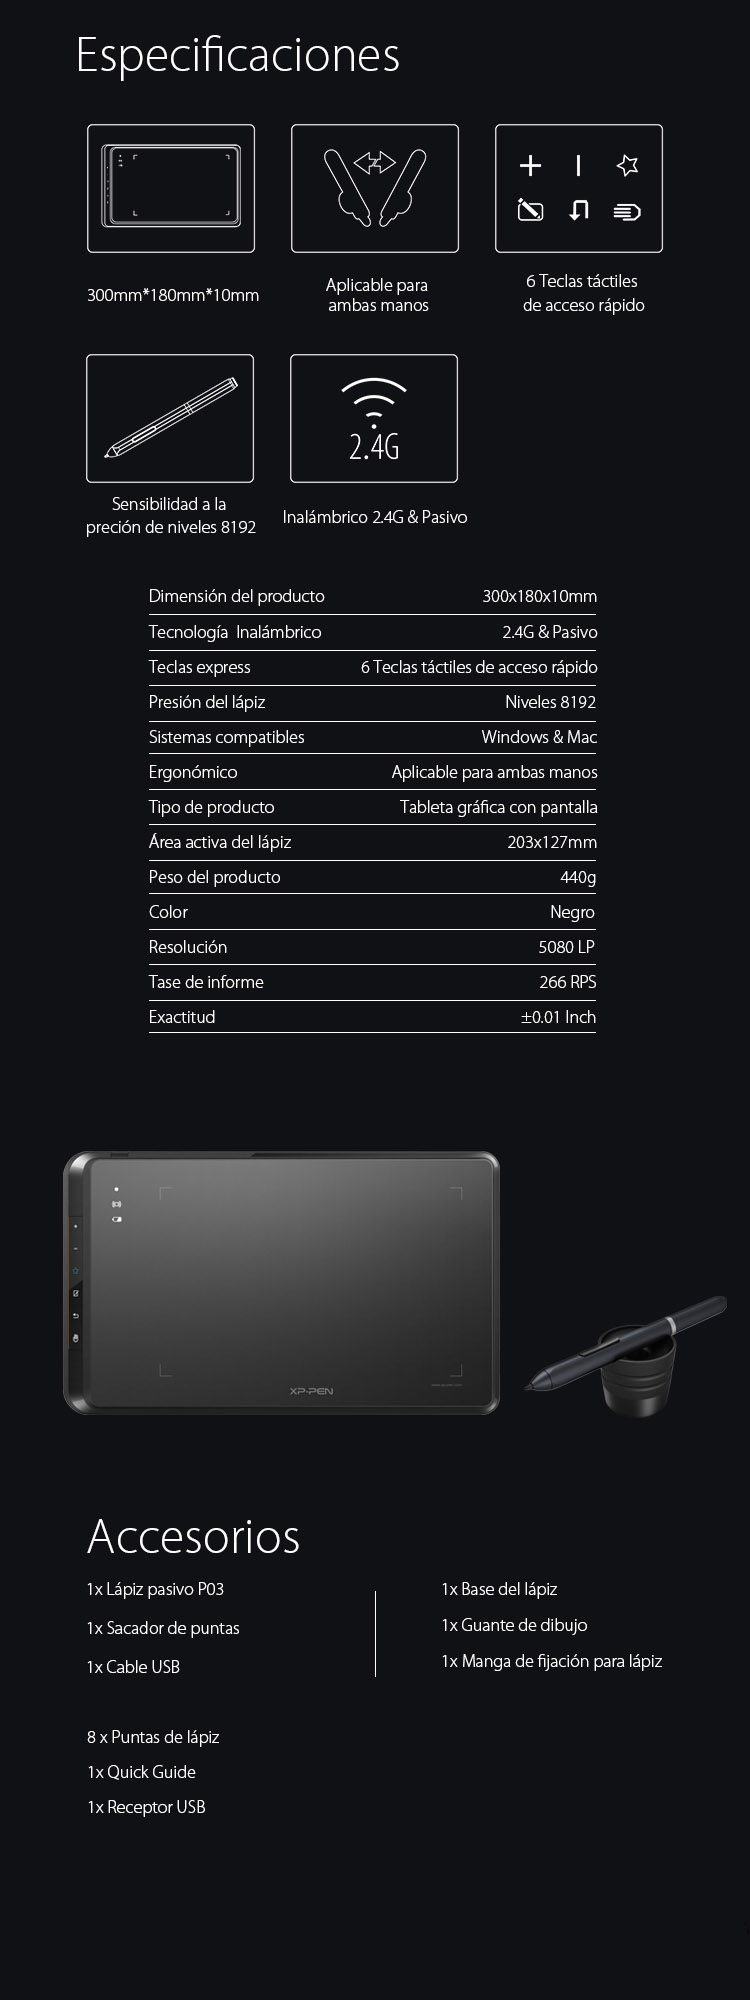 Especificaciones y Accesorios de Tableta gráfica XP-Pen Star 05